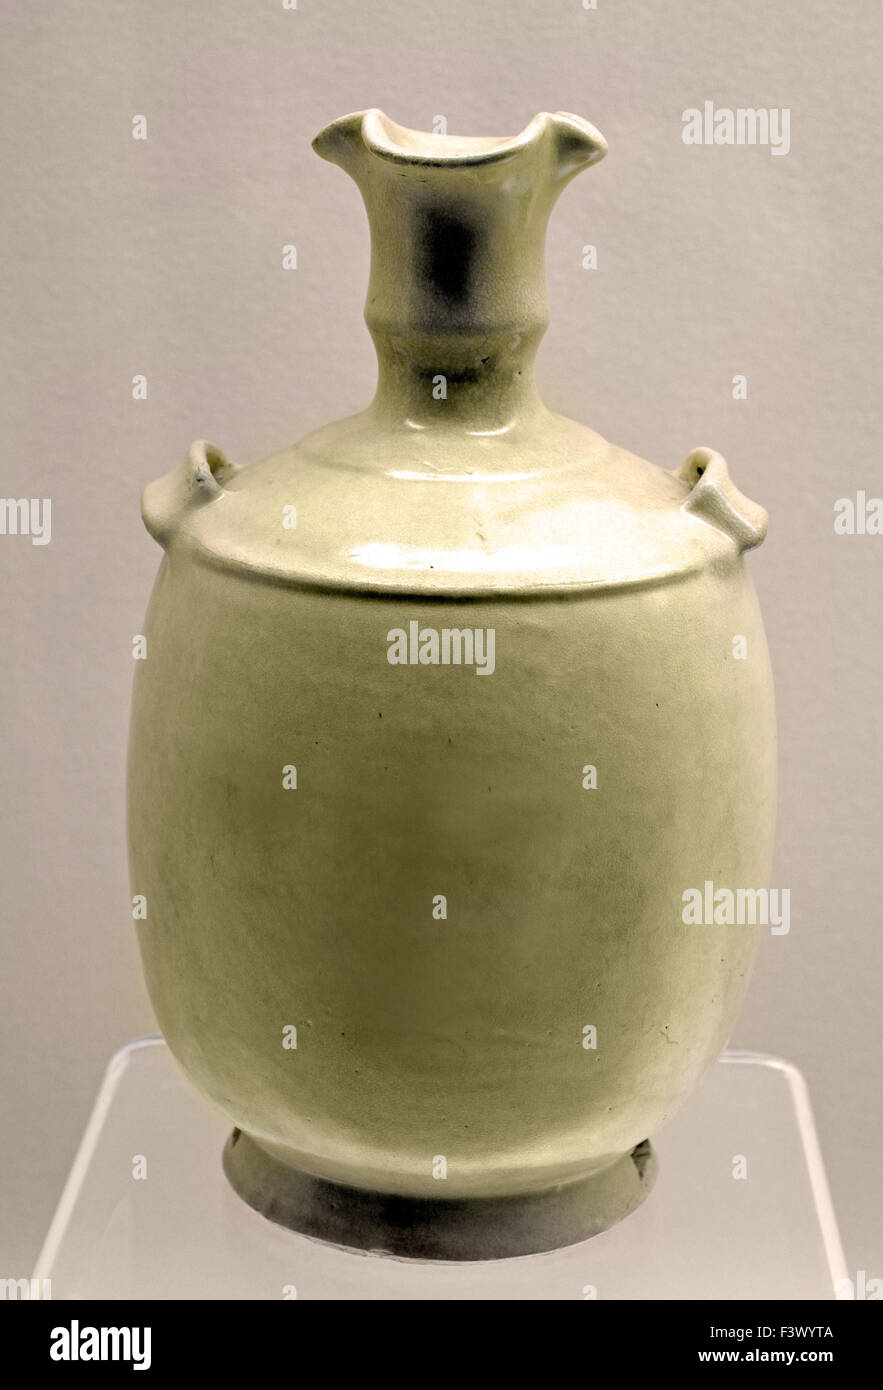 Vitrage blanc Pot suspendu ( Cinq Dynasties A.D. 906 - 960 ) Musée de Shanghai de l'ancien art chinois Chine Banque D'Images